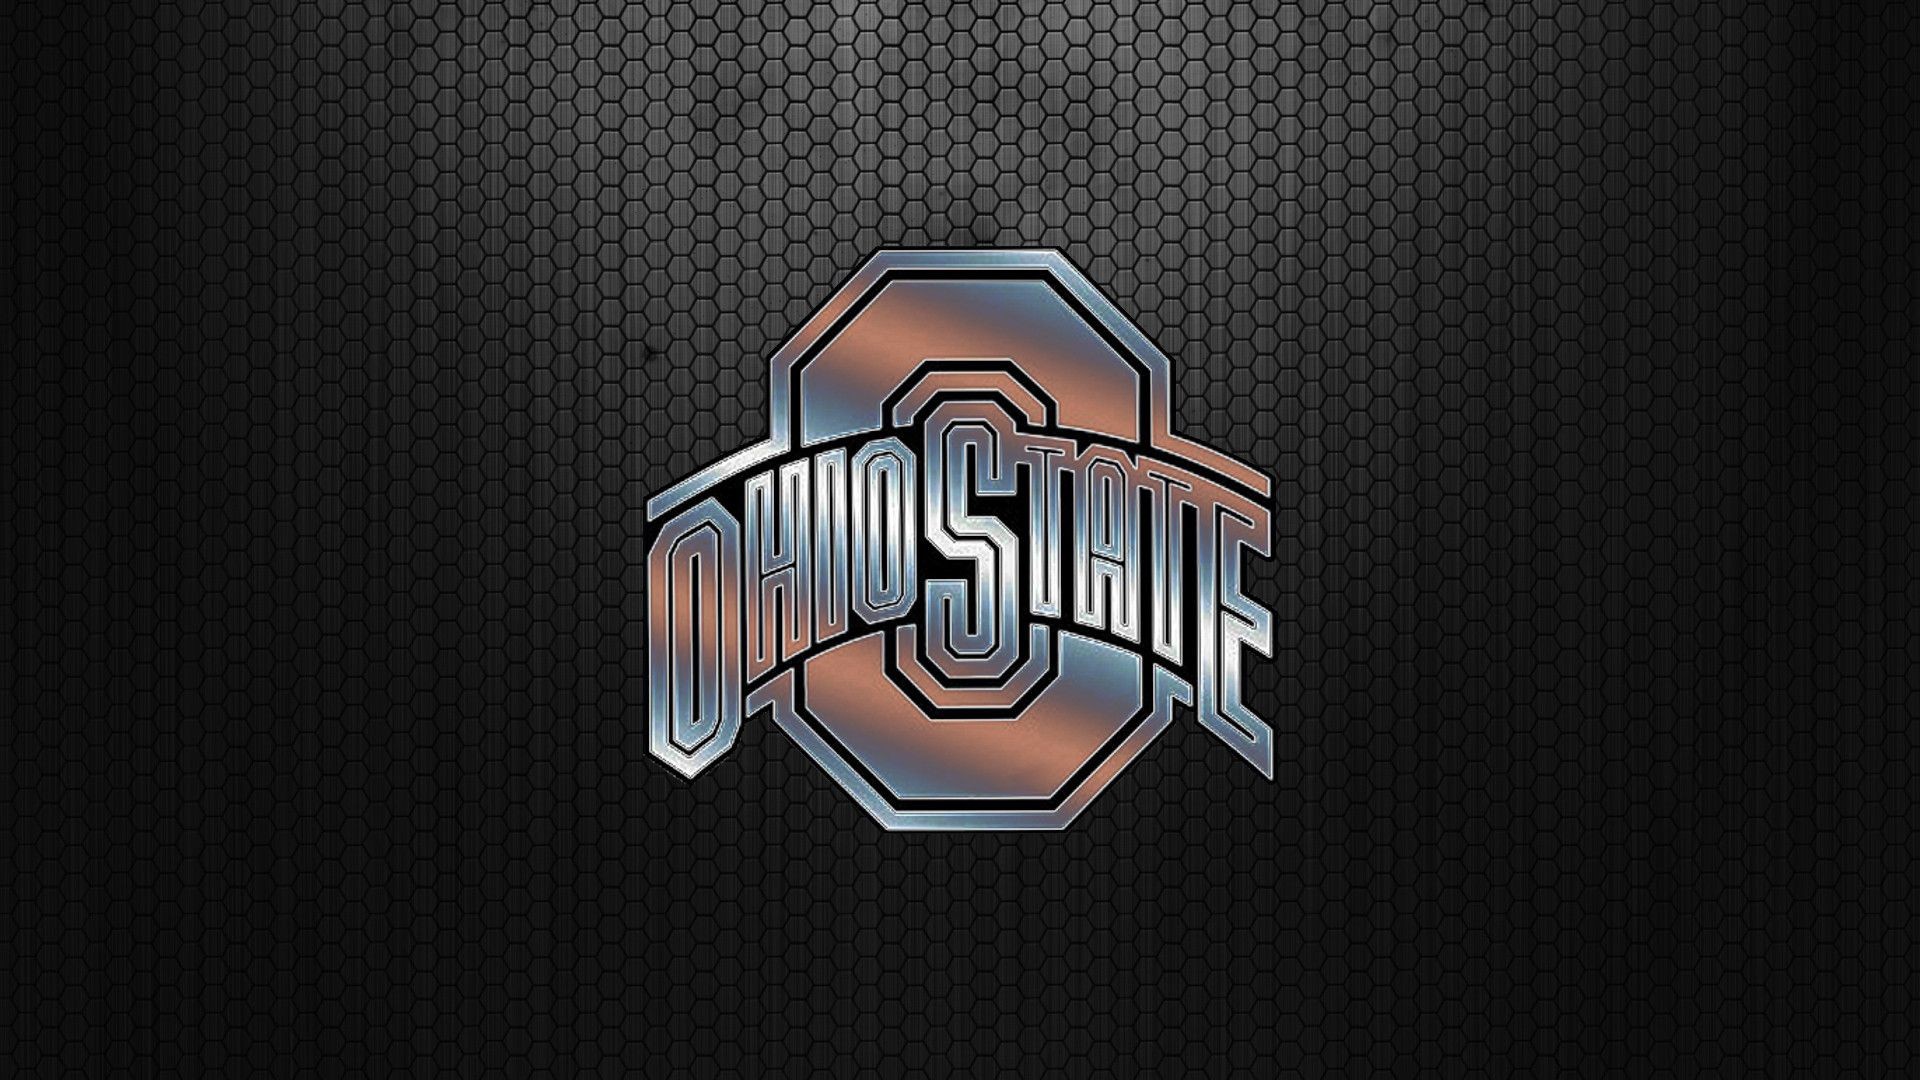 Ohio State University Wallpaper Full HDQ Ohio State